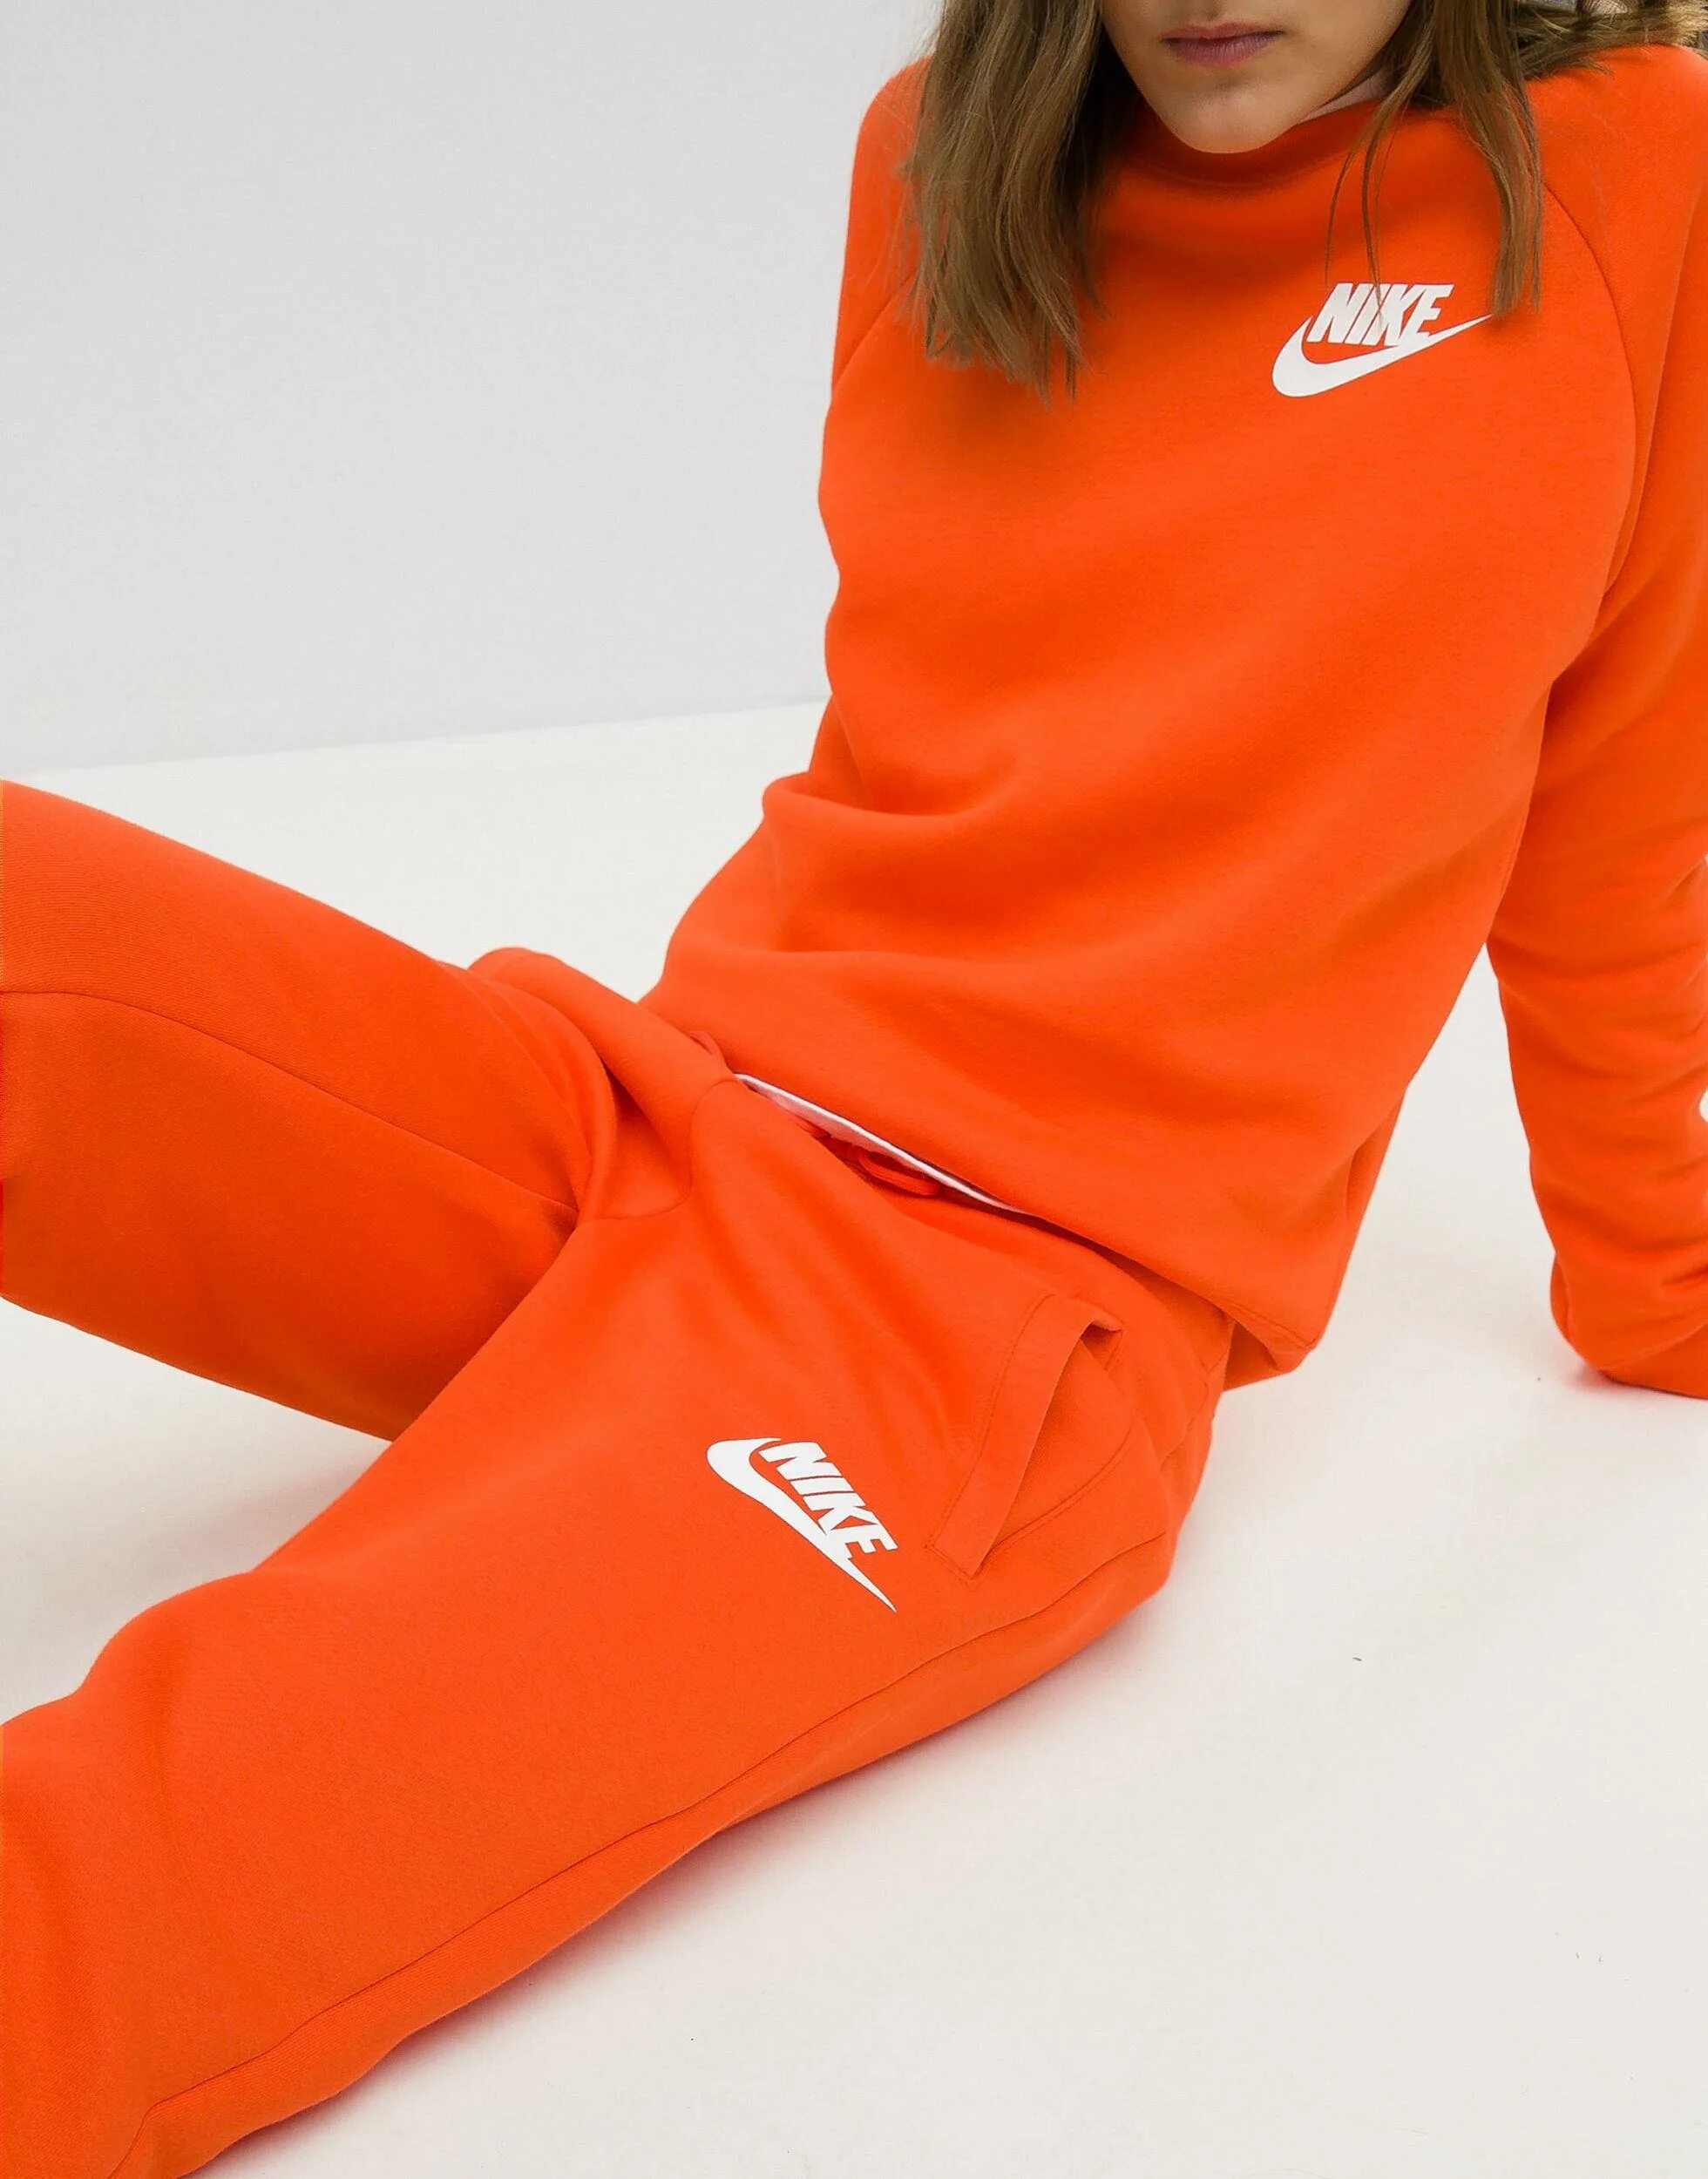 Оранжевый спортивный костюм. Nike Jogger оранжевые. Оранжевые штаны найк женские. 114830 Hummel спортивные штаны женские оранжевые. Спортивный костюм найк оранжевый.